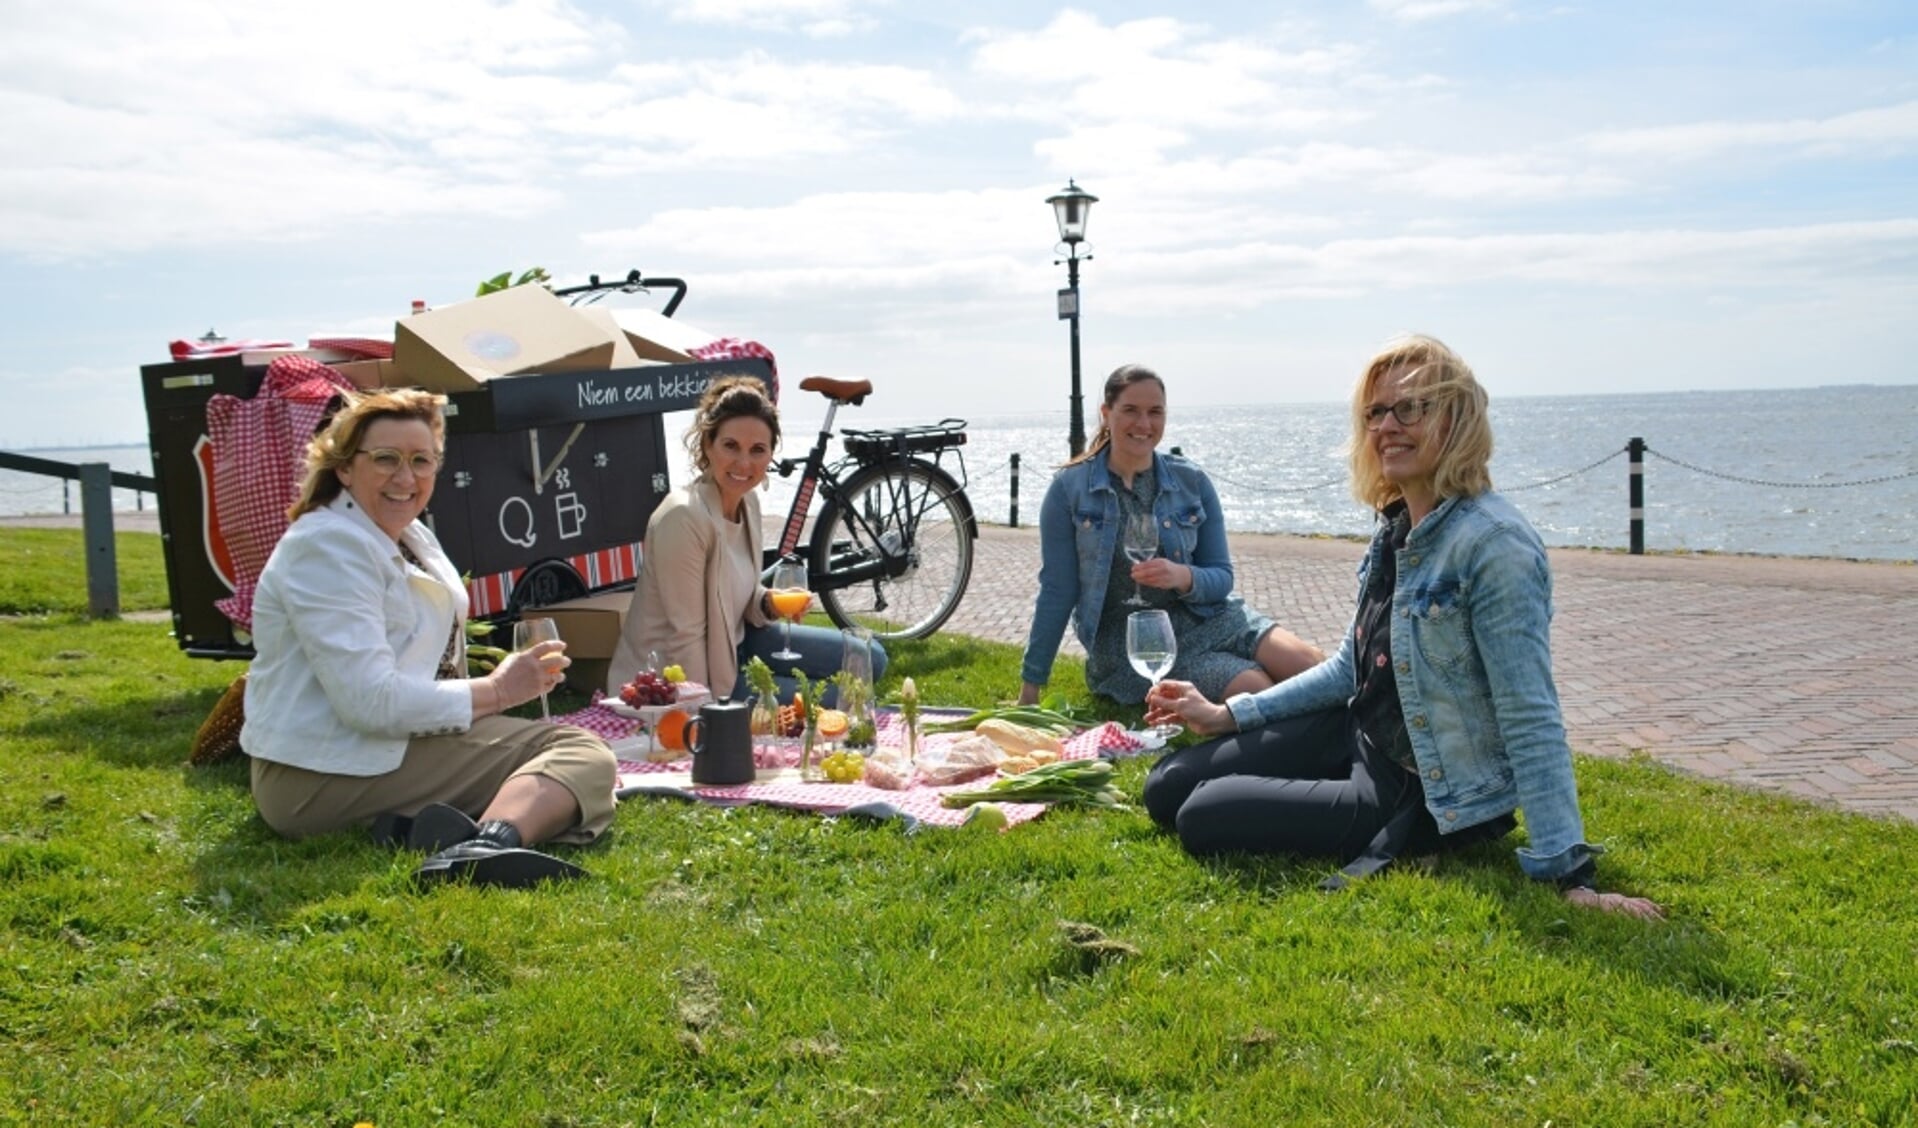  Op de foto van links naar rechts: Annerie Ester, Henria Romkes, Adrie Korf en Josu00e9 Oijevaar, genietend van de picknick onderaan de vuurtoren.